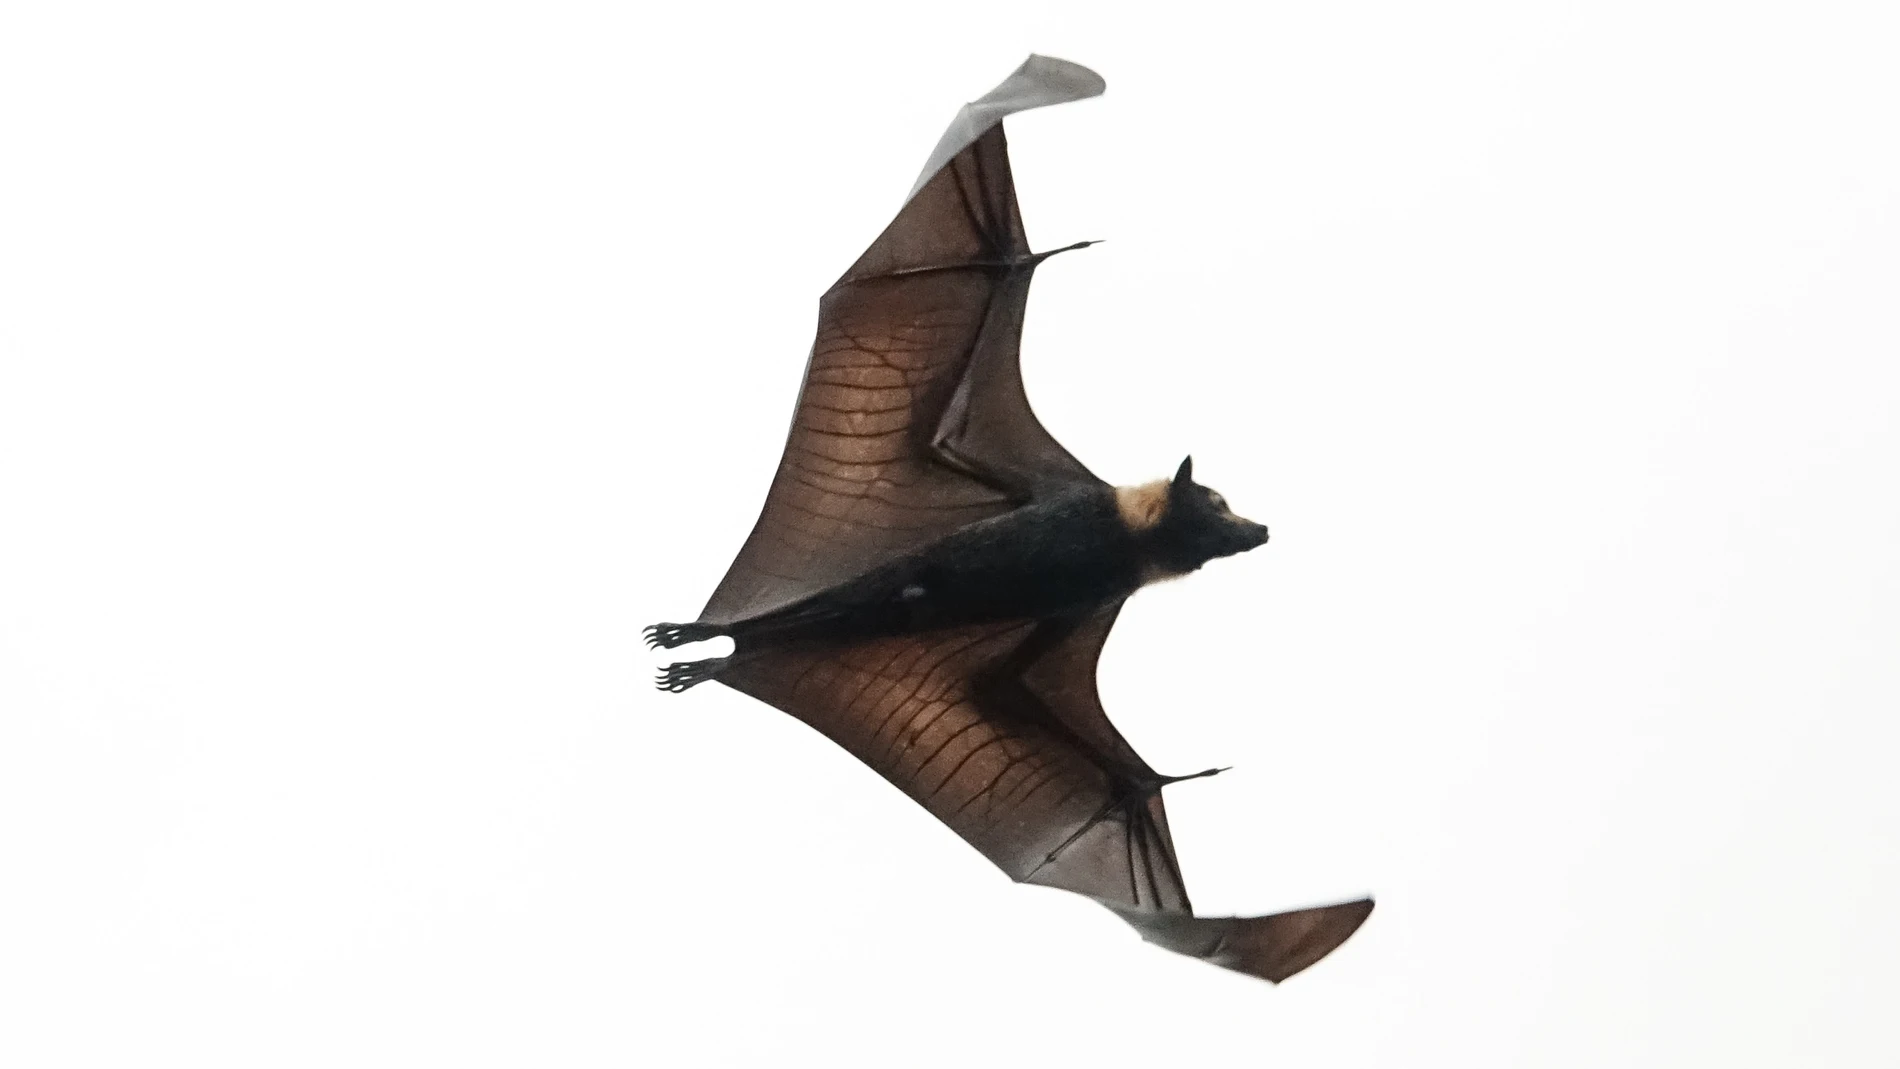 Murciélago del género Pteropus, conocido comúnmente como “Zorro volador”